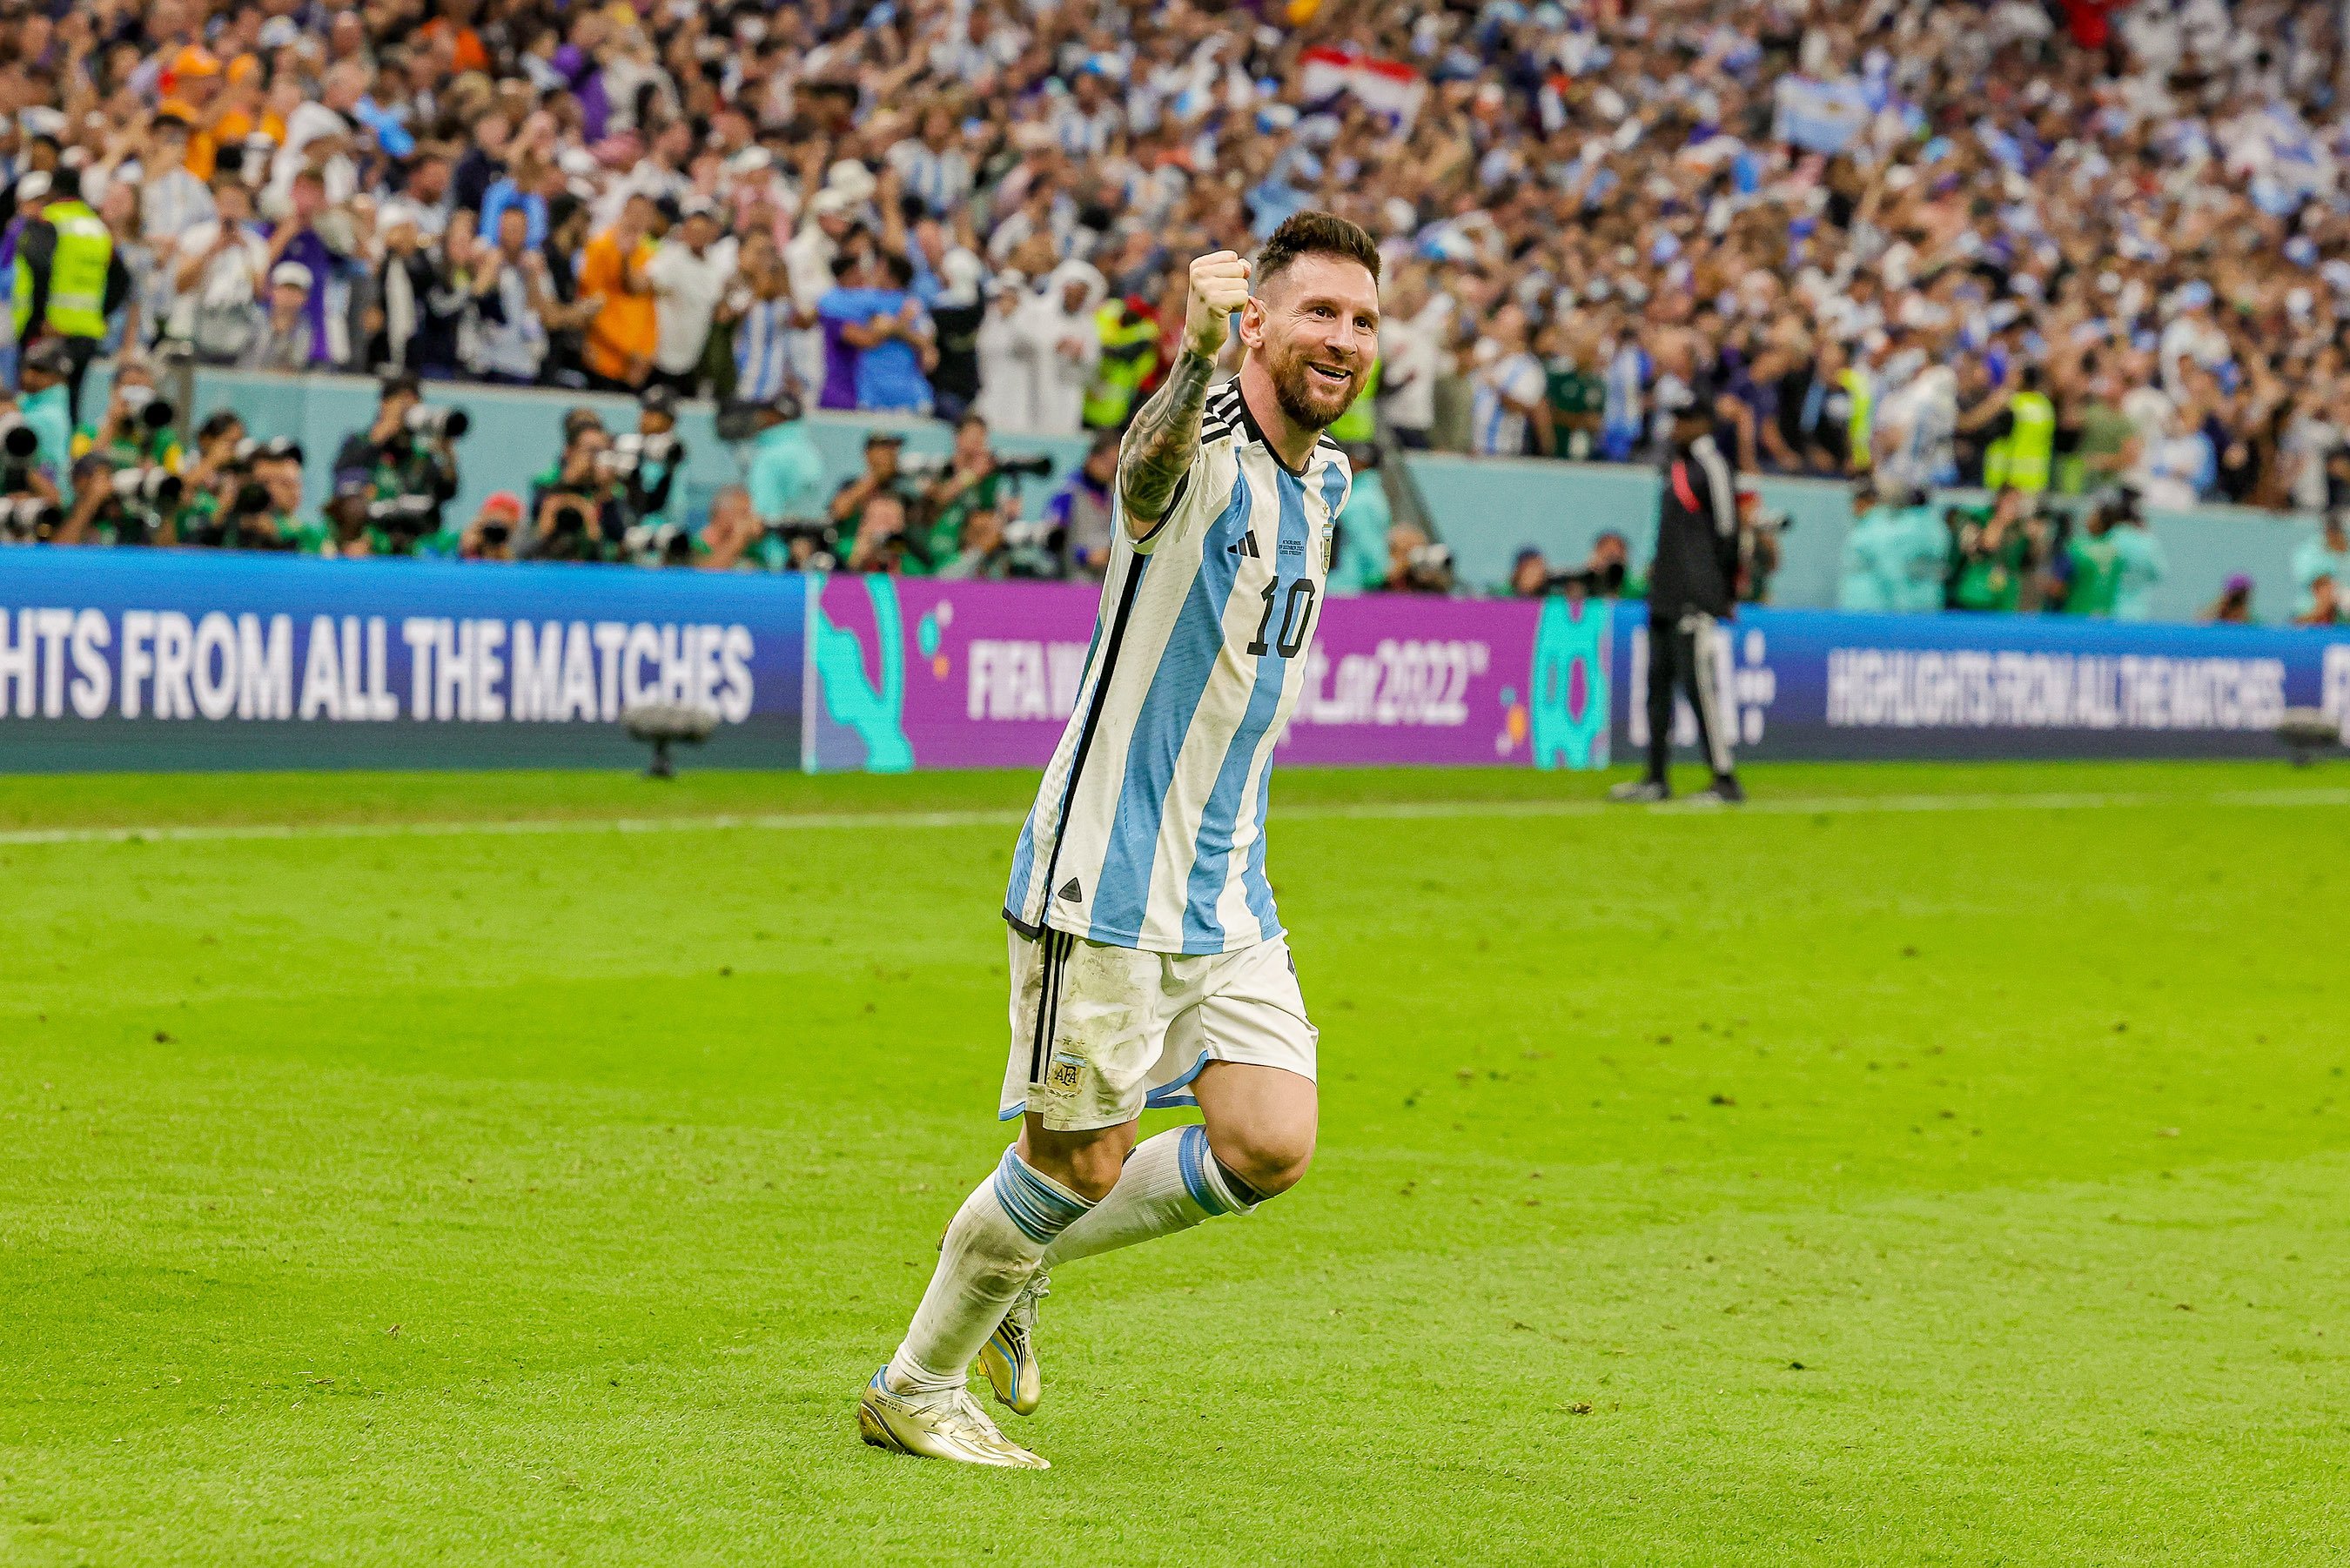 Messi, decisió inesperada si guanya el Mundial amb l'Argentina